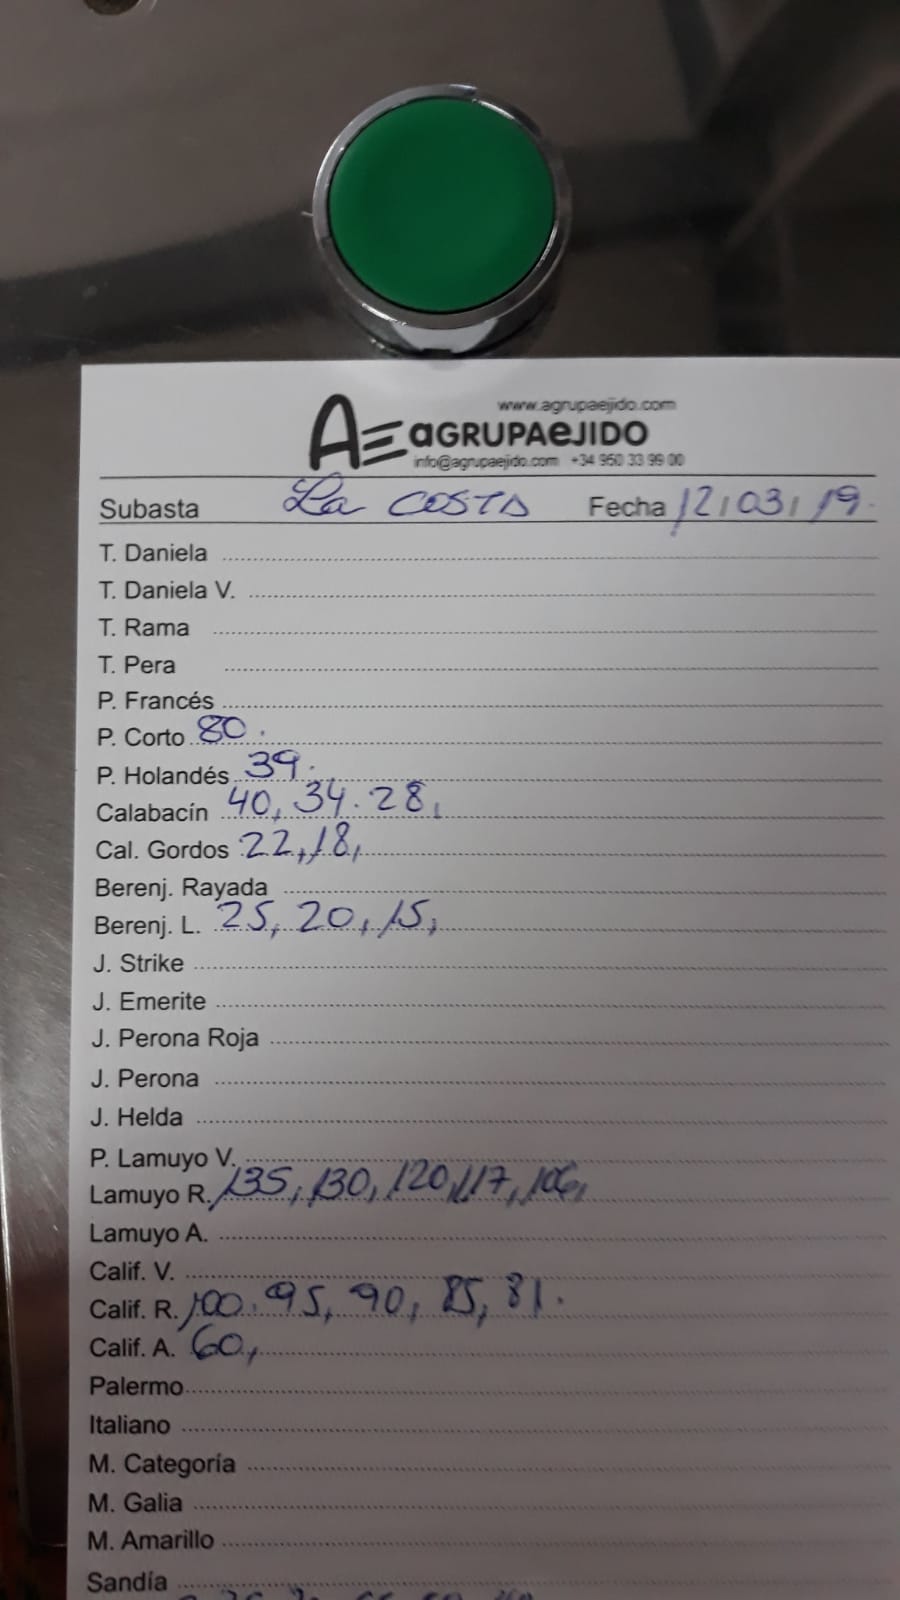 Subasta hortofrutícola AgrupaEjido La Costa 12 de Marzo 2019